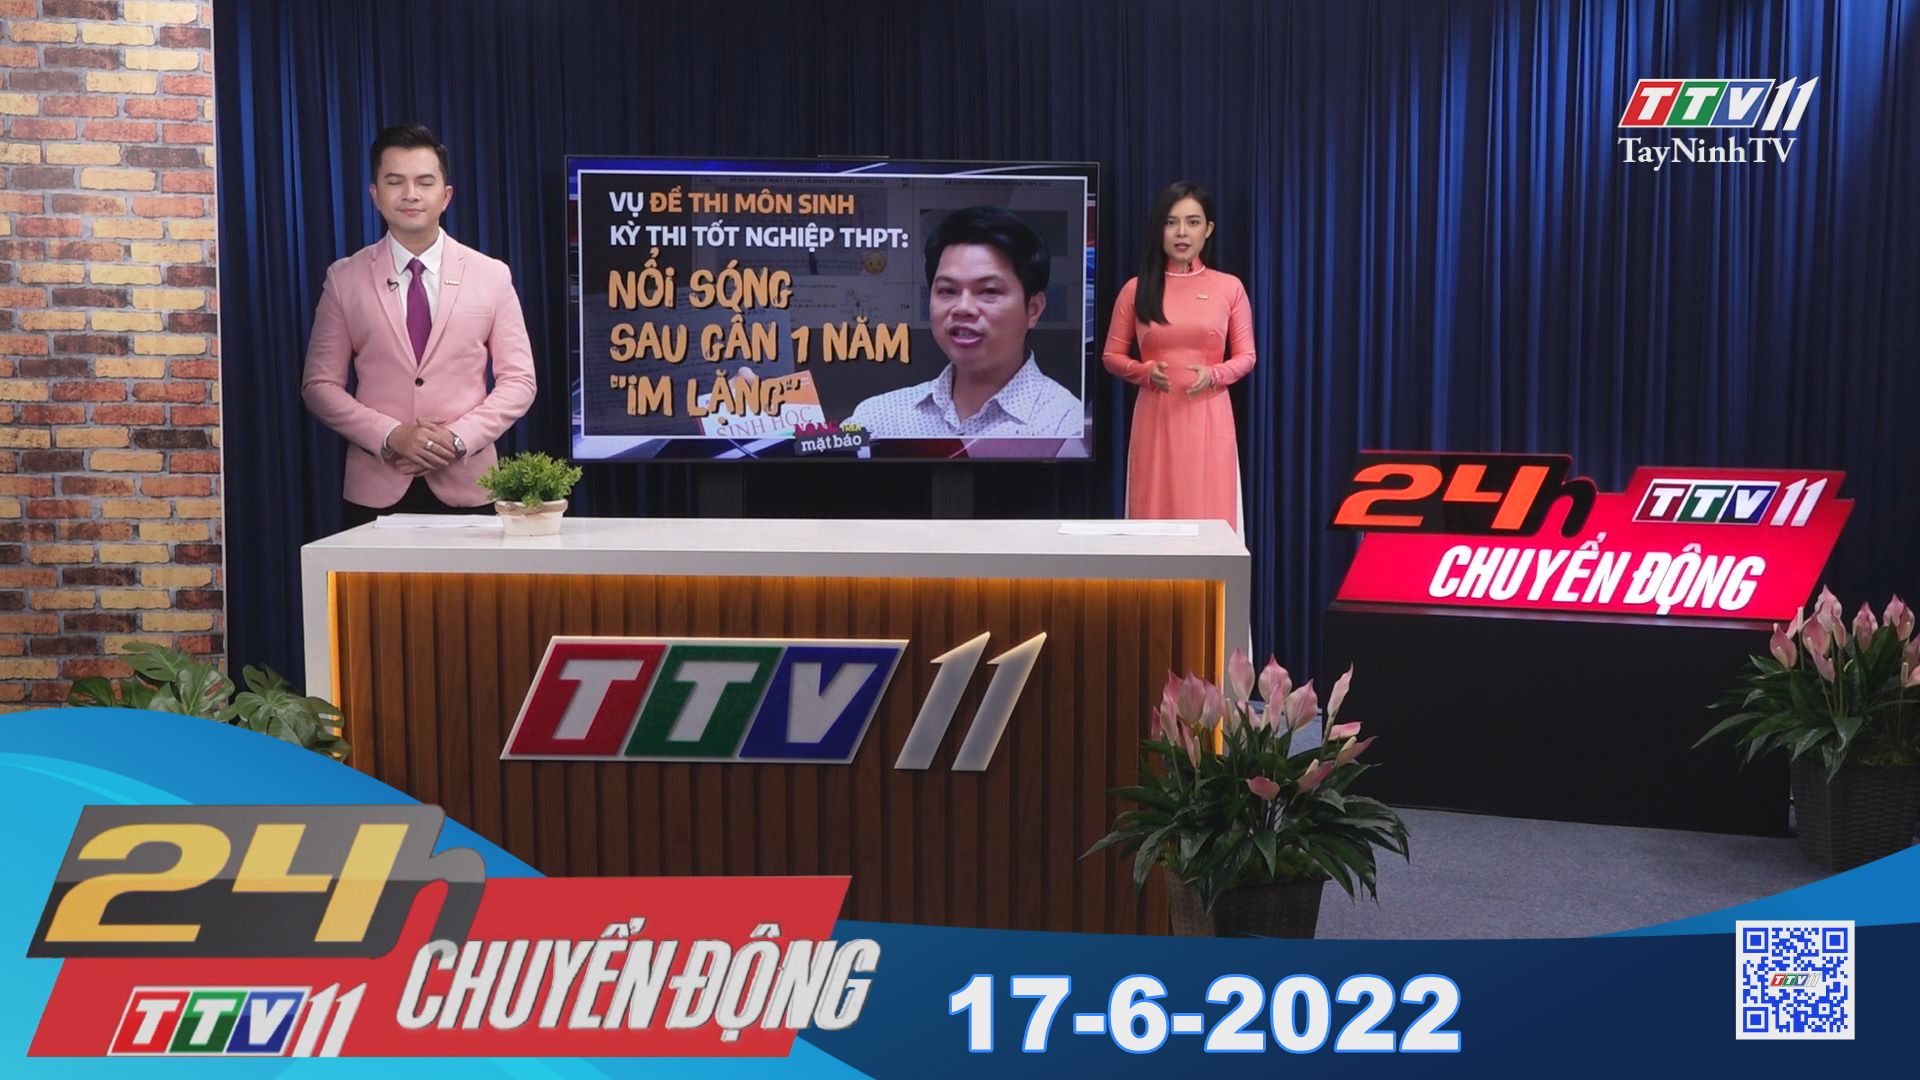 24h Chuyển động 17-6-2022 | Tin tức hôm nay | TayNinhTV